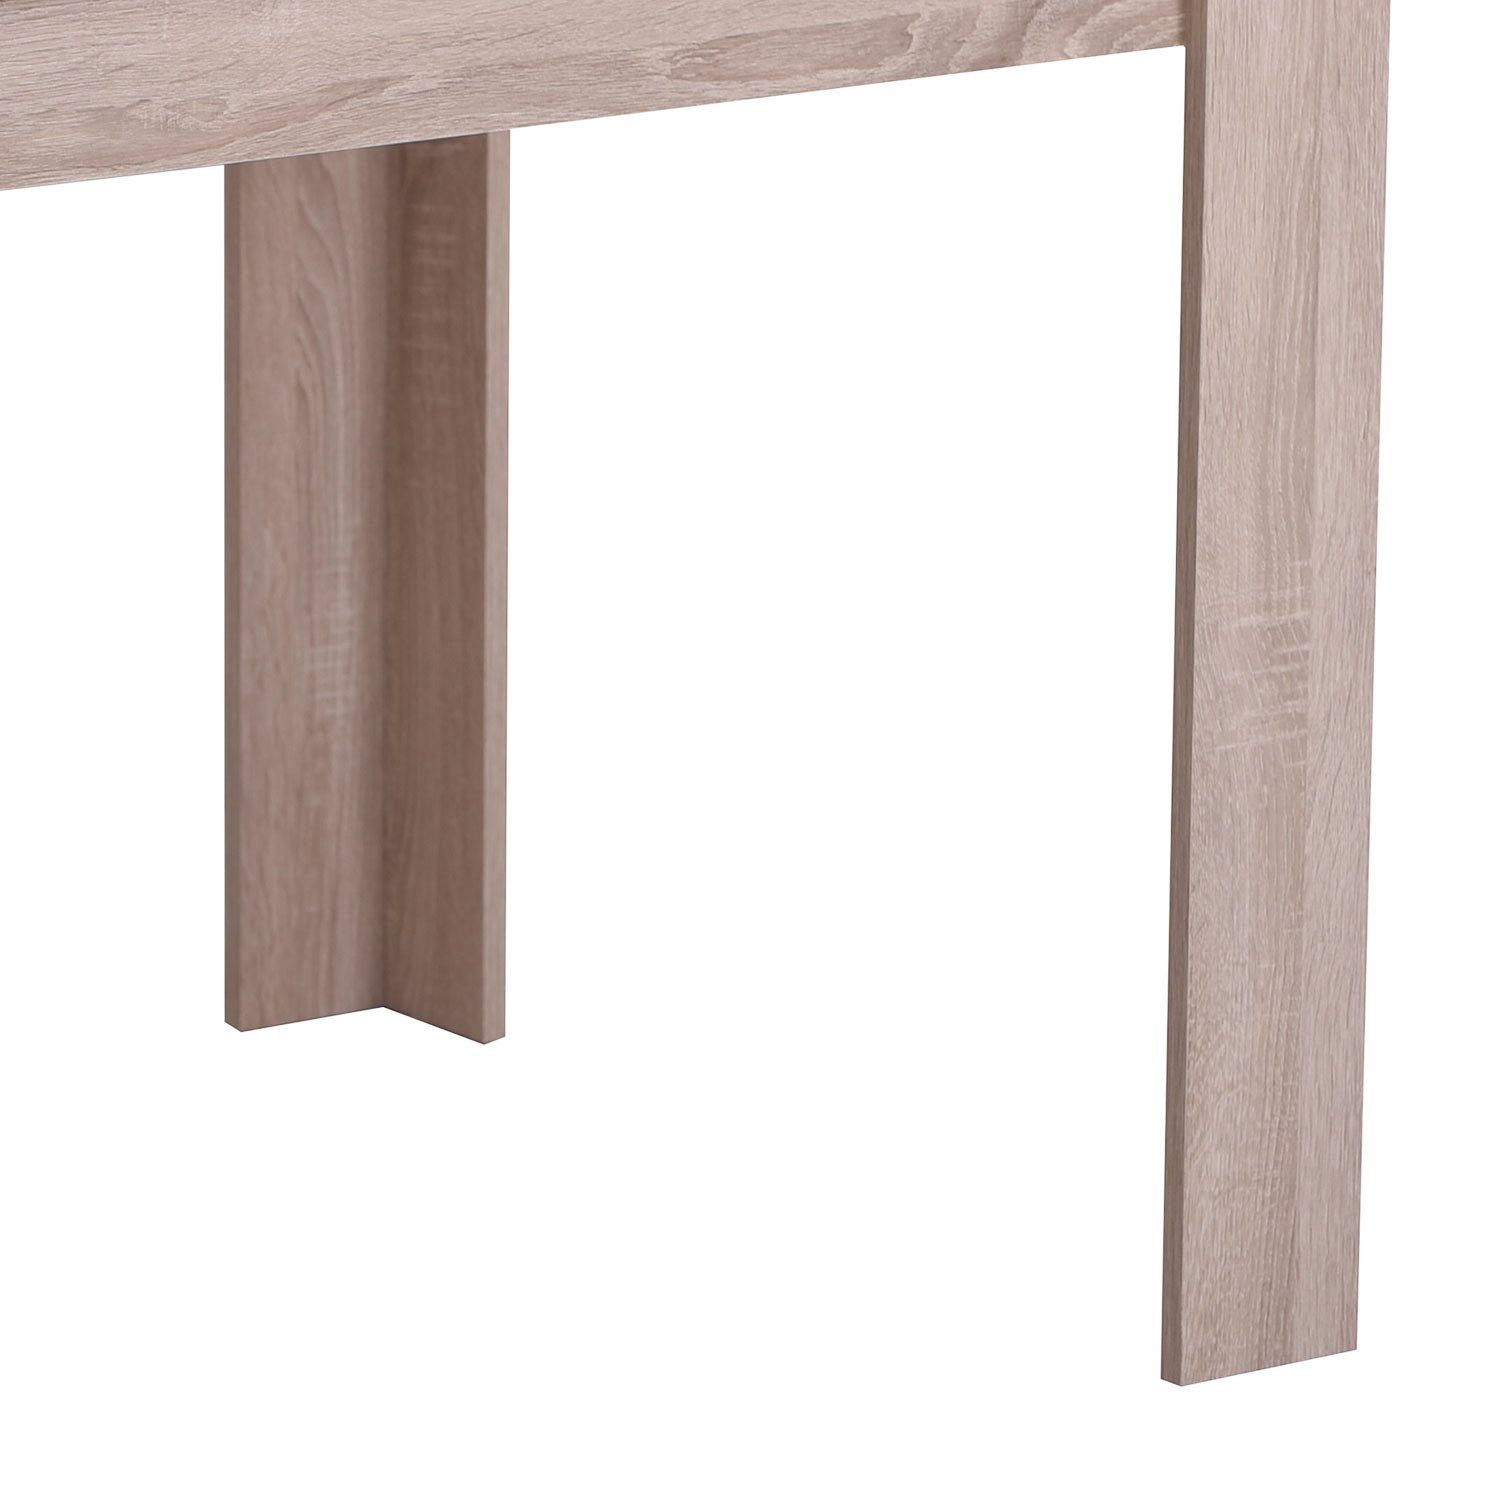 Homestyle4u Esstisch Esszimmertisch Holztisch Küchentisch cm Holz 135x80 Einlegebretter | (wechselbare Farben braun (weiß/braun) mehrere | braun braun